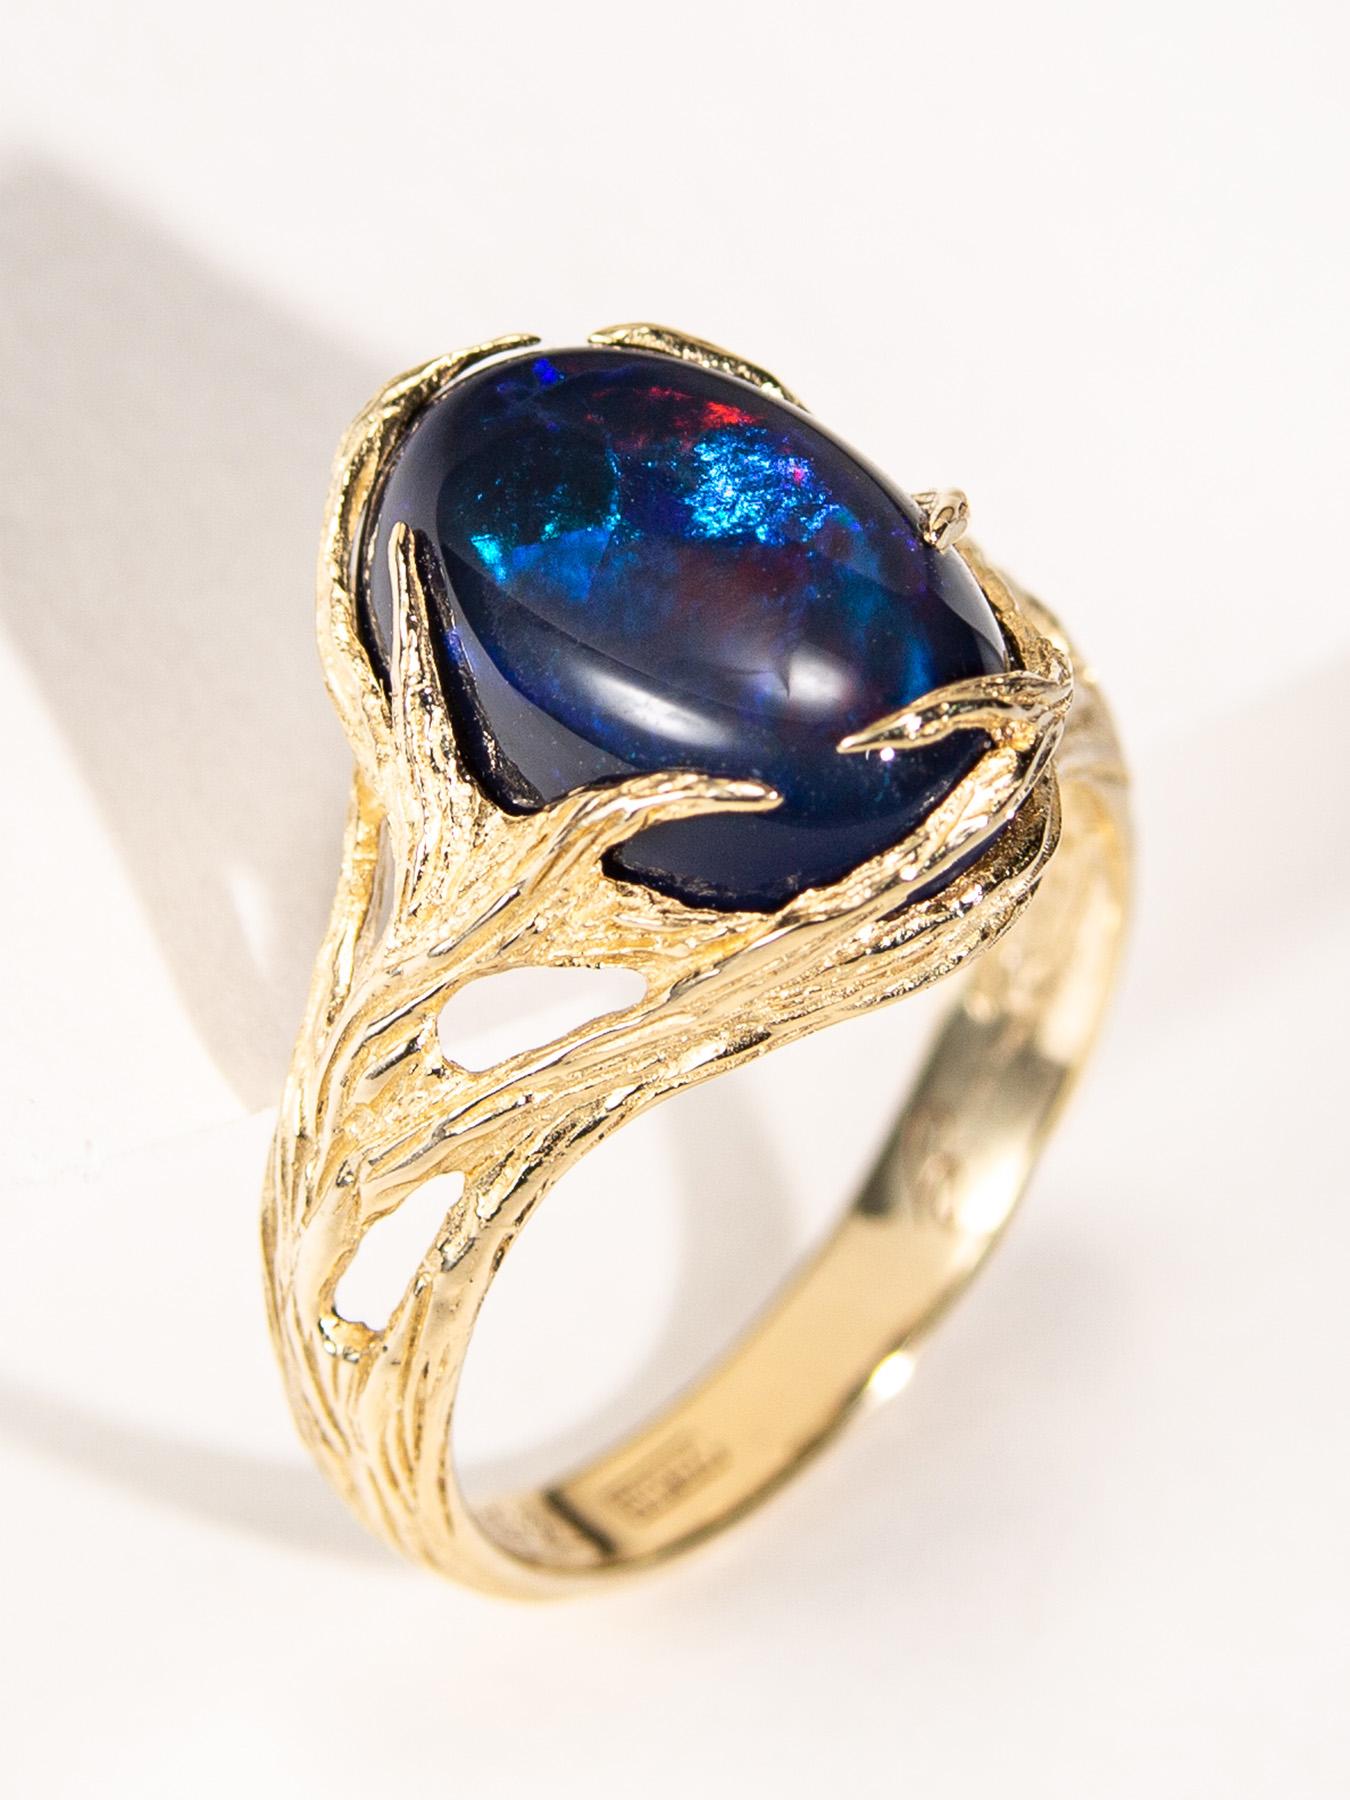 Women's or Men's Black Opal Gold Ring Neon Blue Australian Engagement ring For Sale